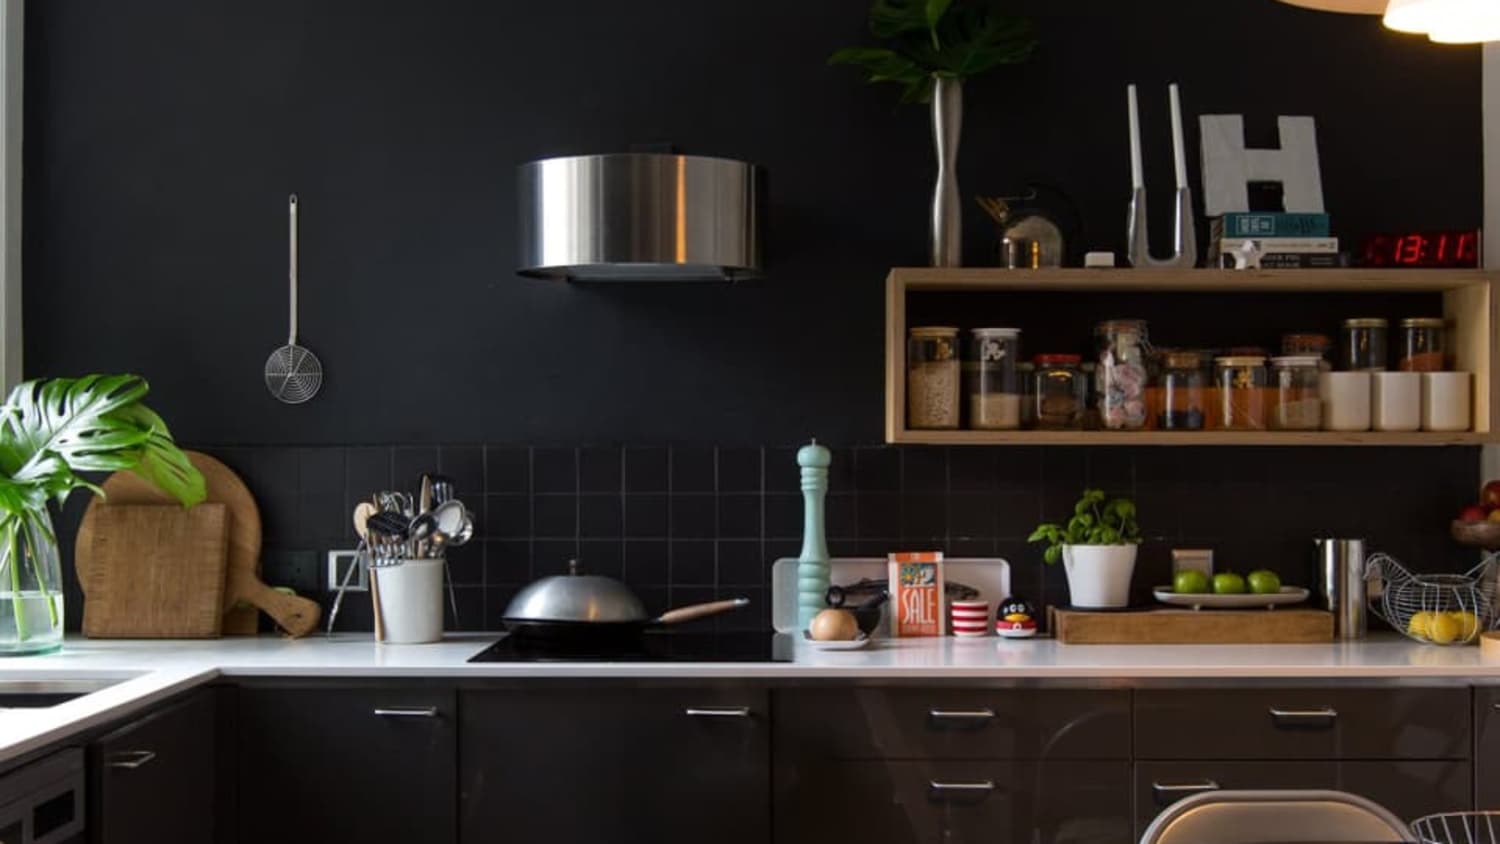 Easy Ways to Brighten Up a Dark Kitchen   Kitchn